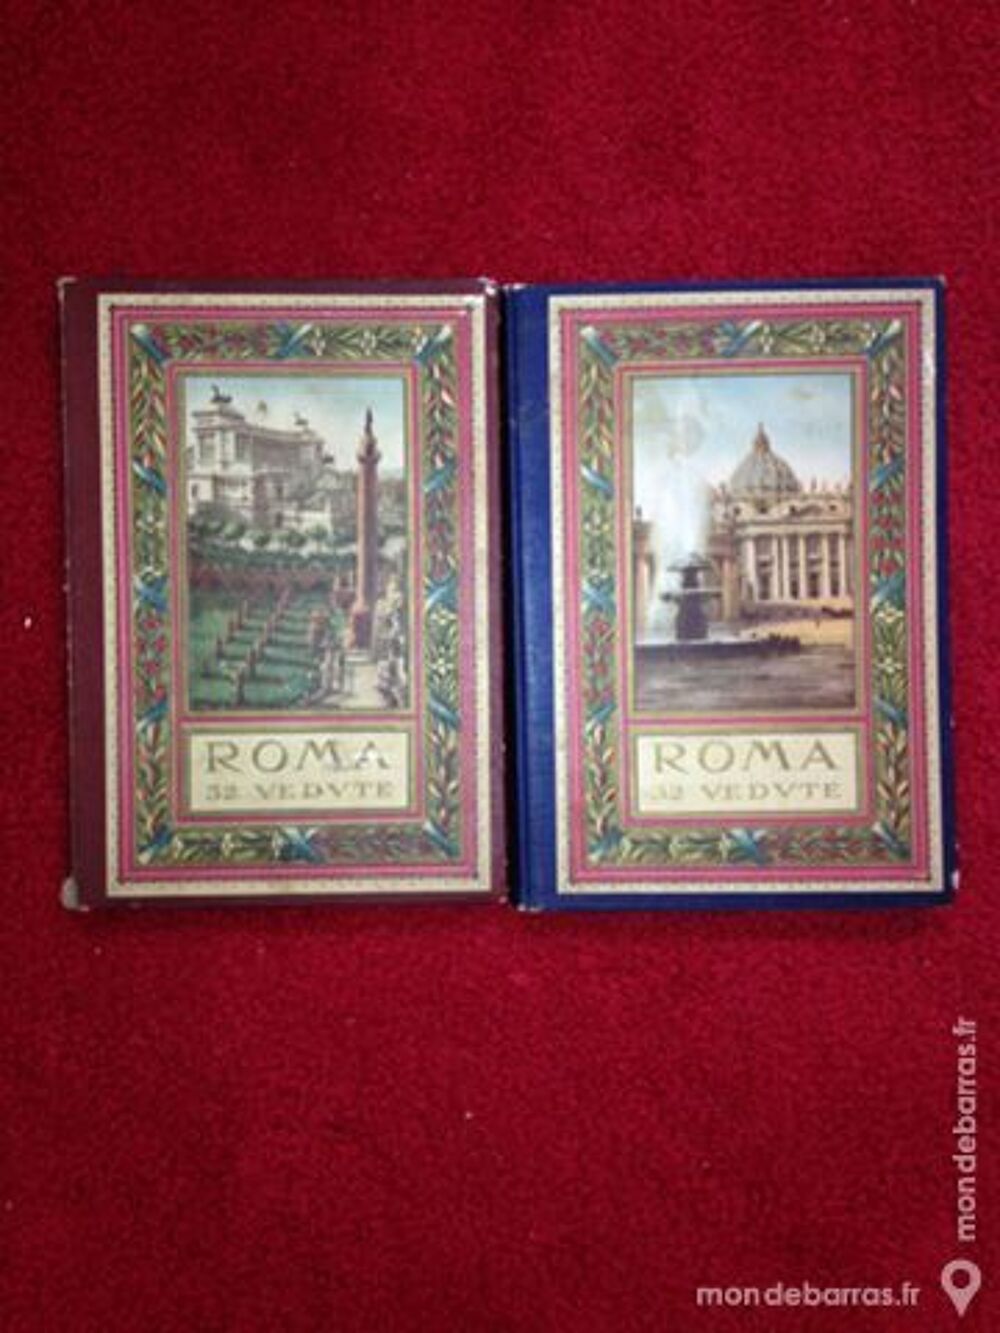 ROMA 32 cartes postales anciennes Livres et BD